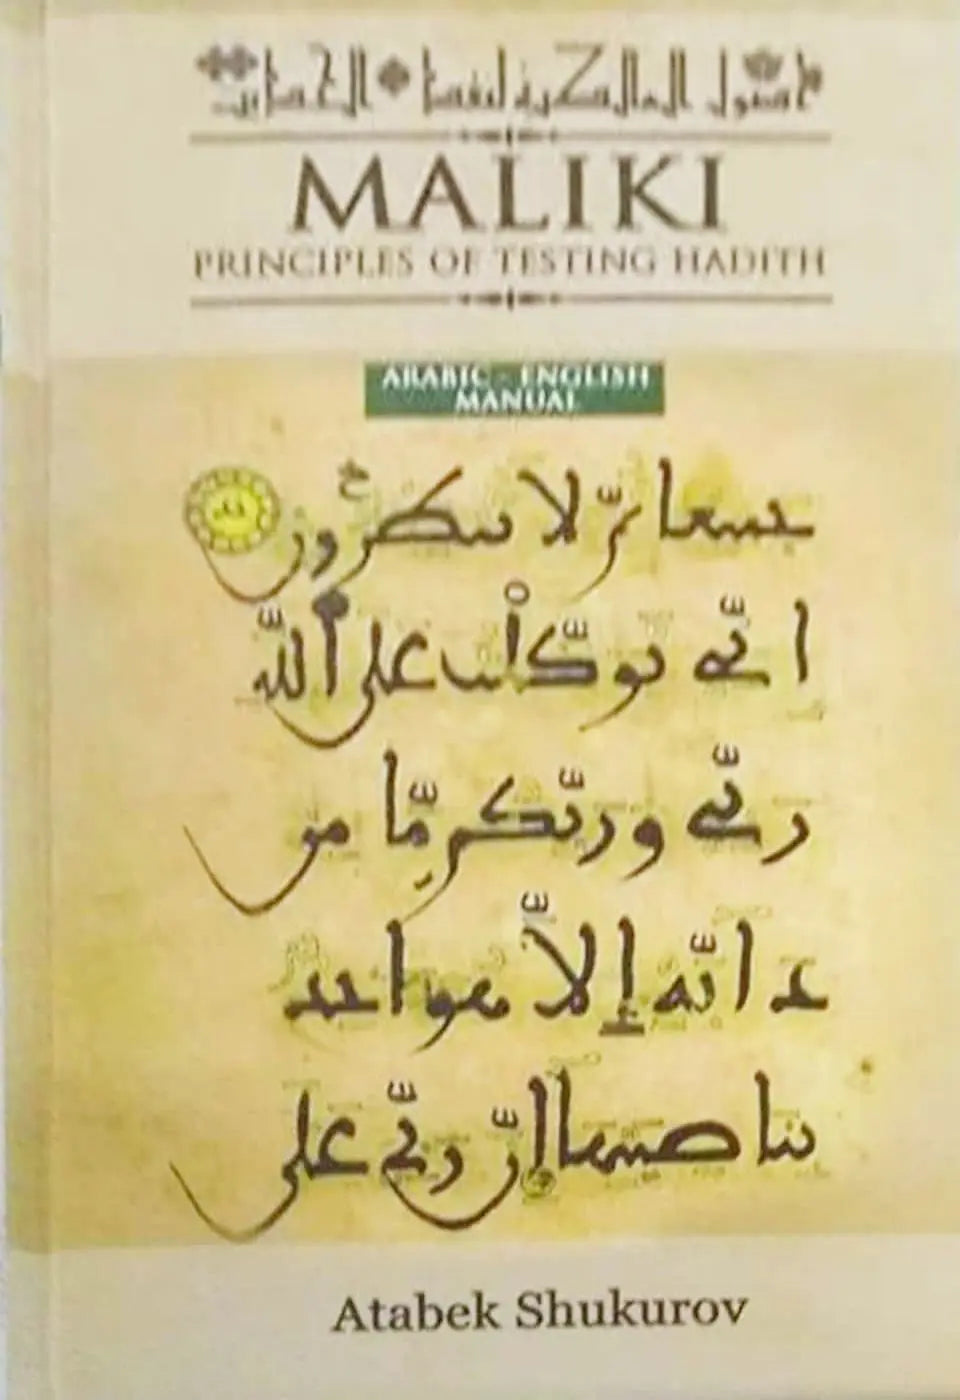 The Maliki Principles of Testing Hadith (Arabic Text With English Translation)